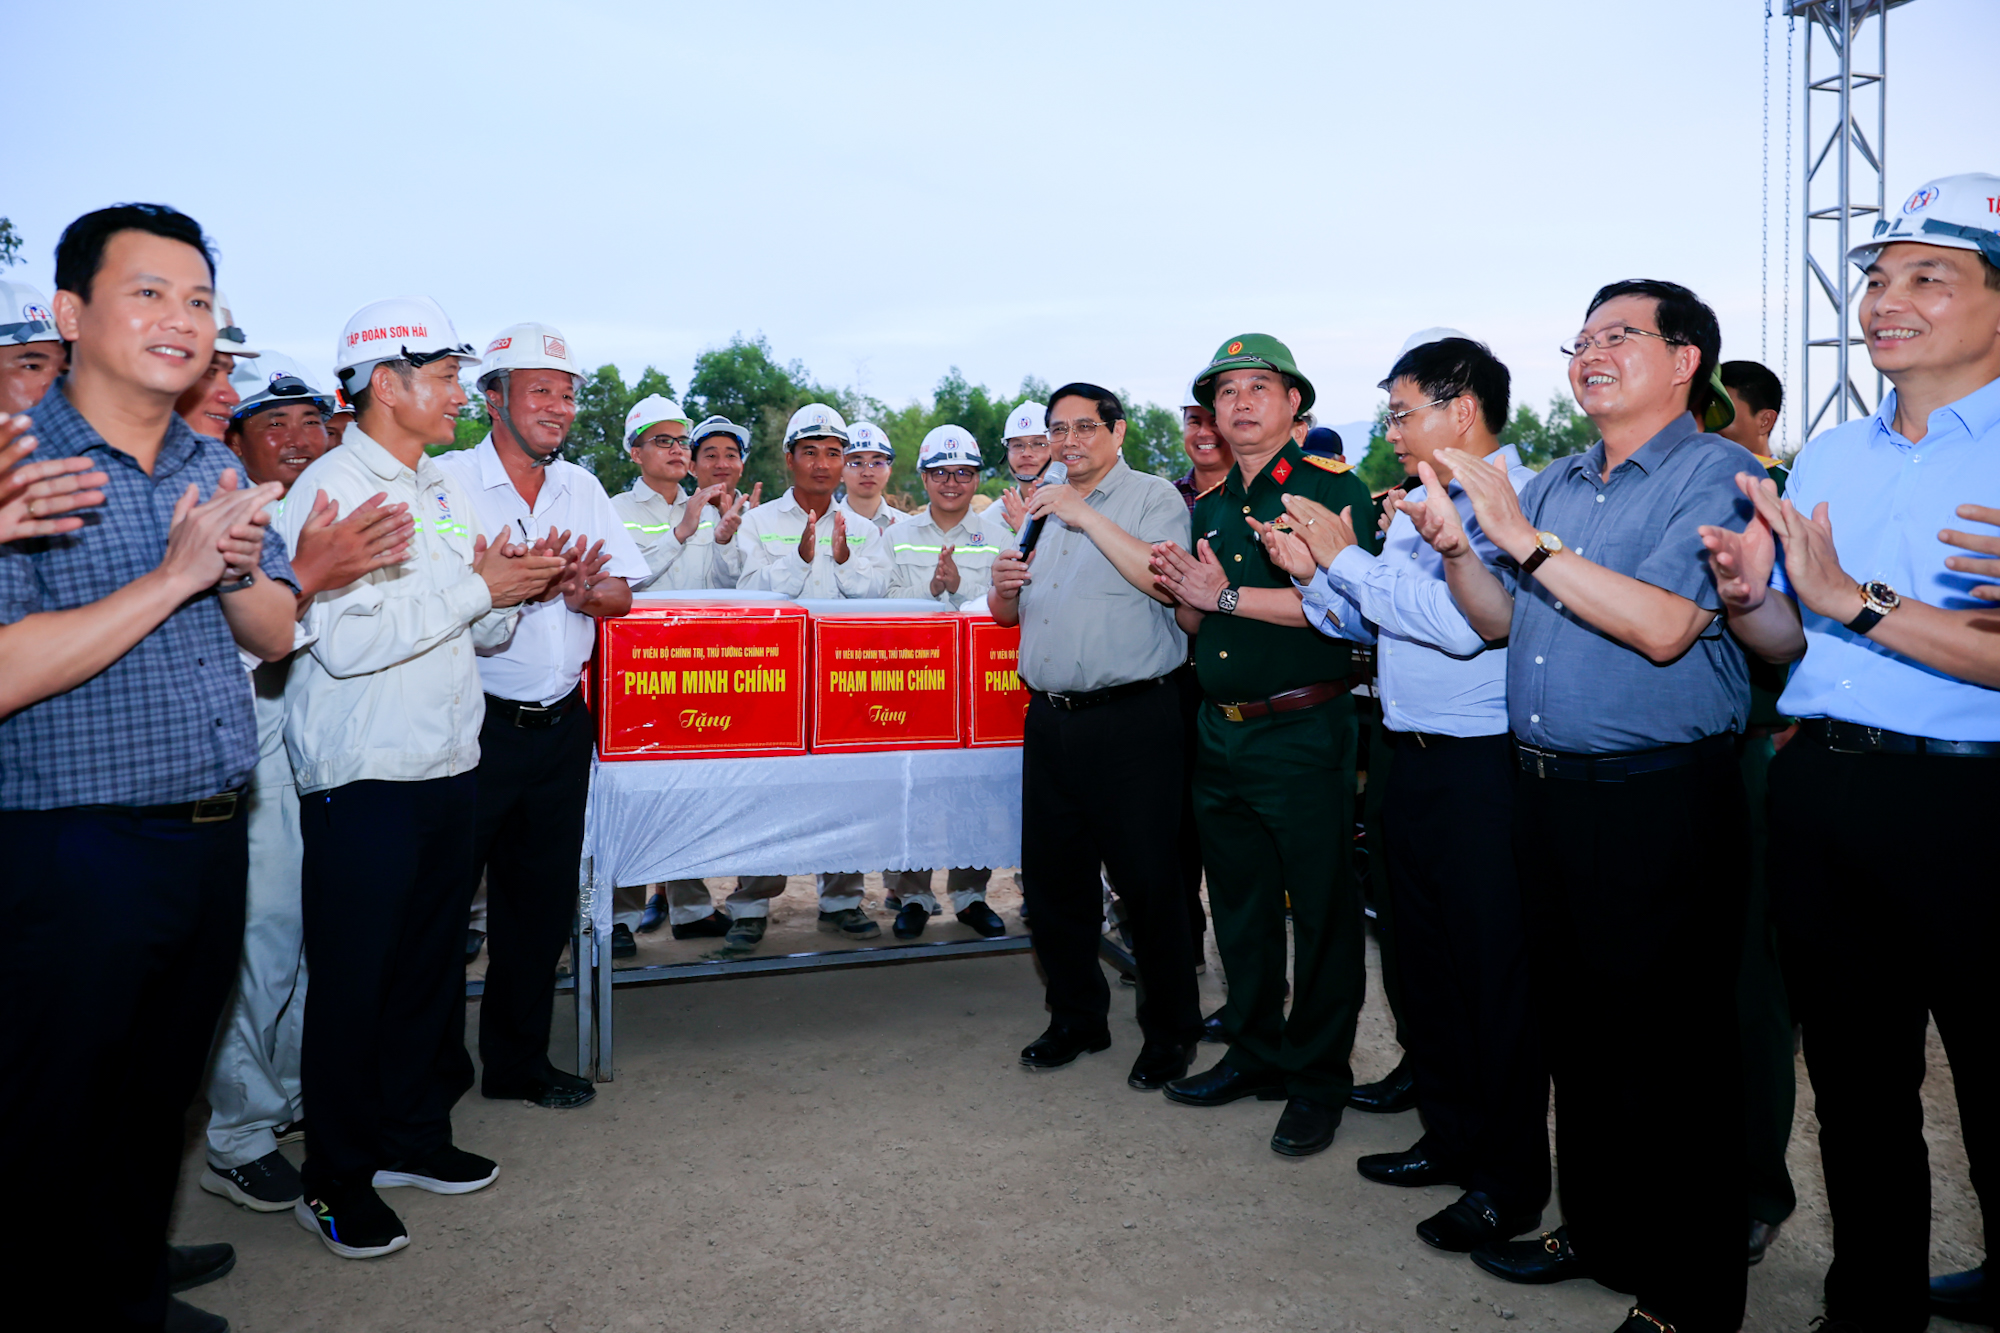 Phấn đấu thông tuyến đường cao tốc từ Quảng Ngãi đến TPHCM trong năm 2025; hoàn thành sớm ngày nào người dân sớm hưởng lợi ngày đó- Ảnh 20.